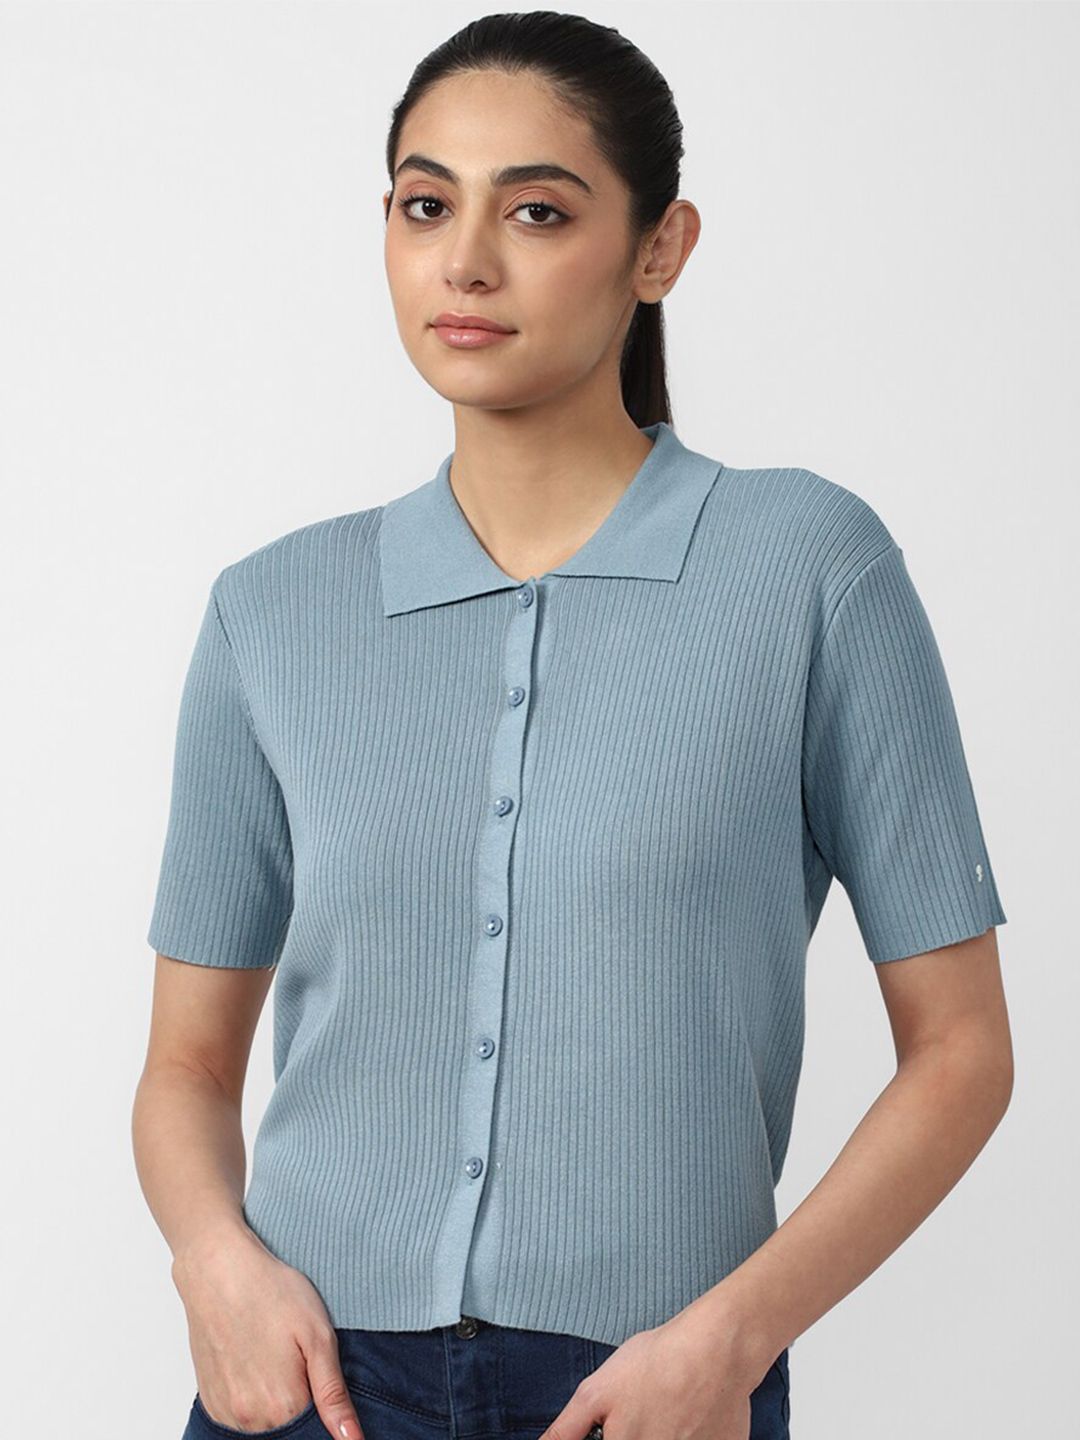 Van Heusen Women Blue Shirt Style Top Price in India